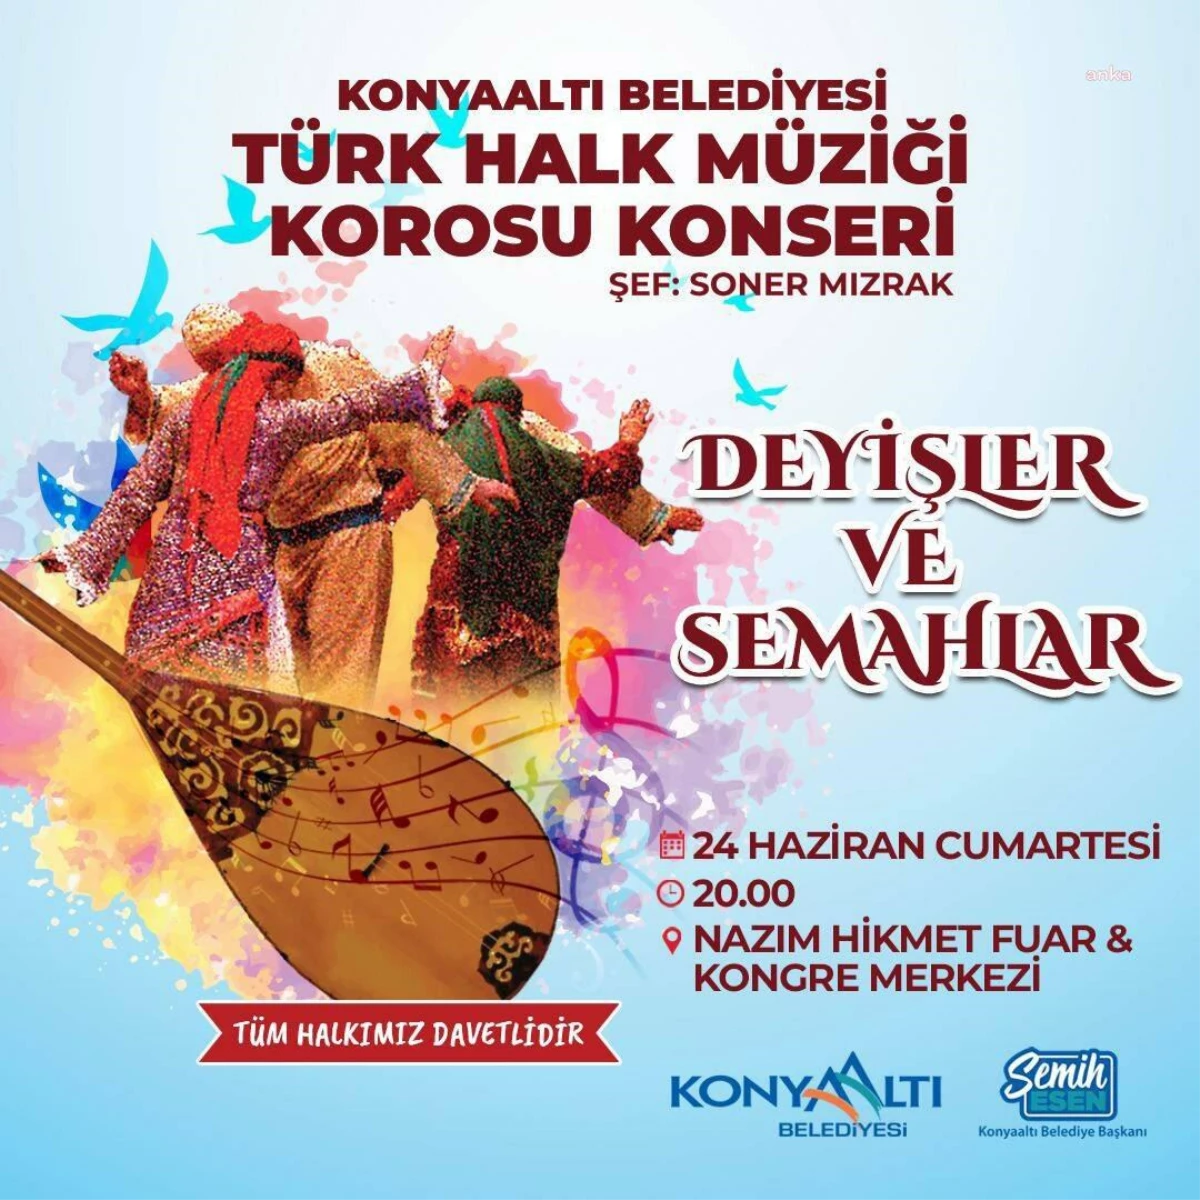 Konyaaltı Belediyesi Türk Halk Müziği Korosu \'Deyişler ve Semahlar\' Konseriyle Dinleyicilerle Buluşuyor